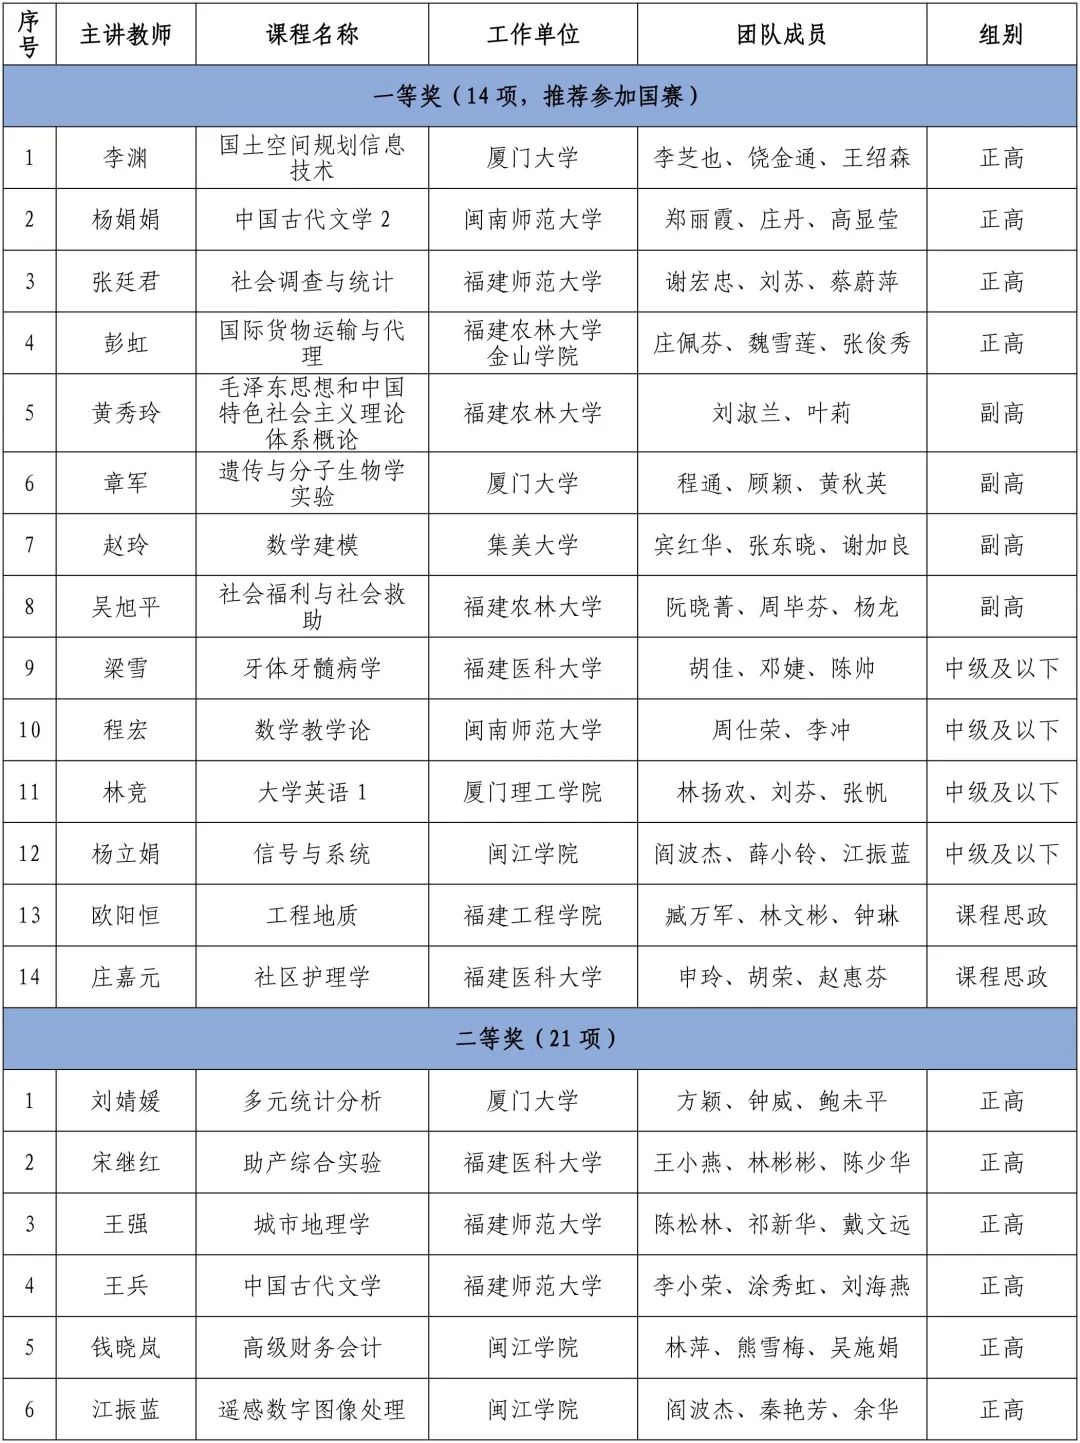 第三届福建省高校教师教学创新大赛获奖名单公布